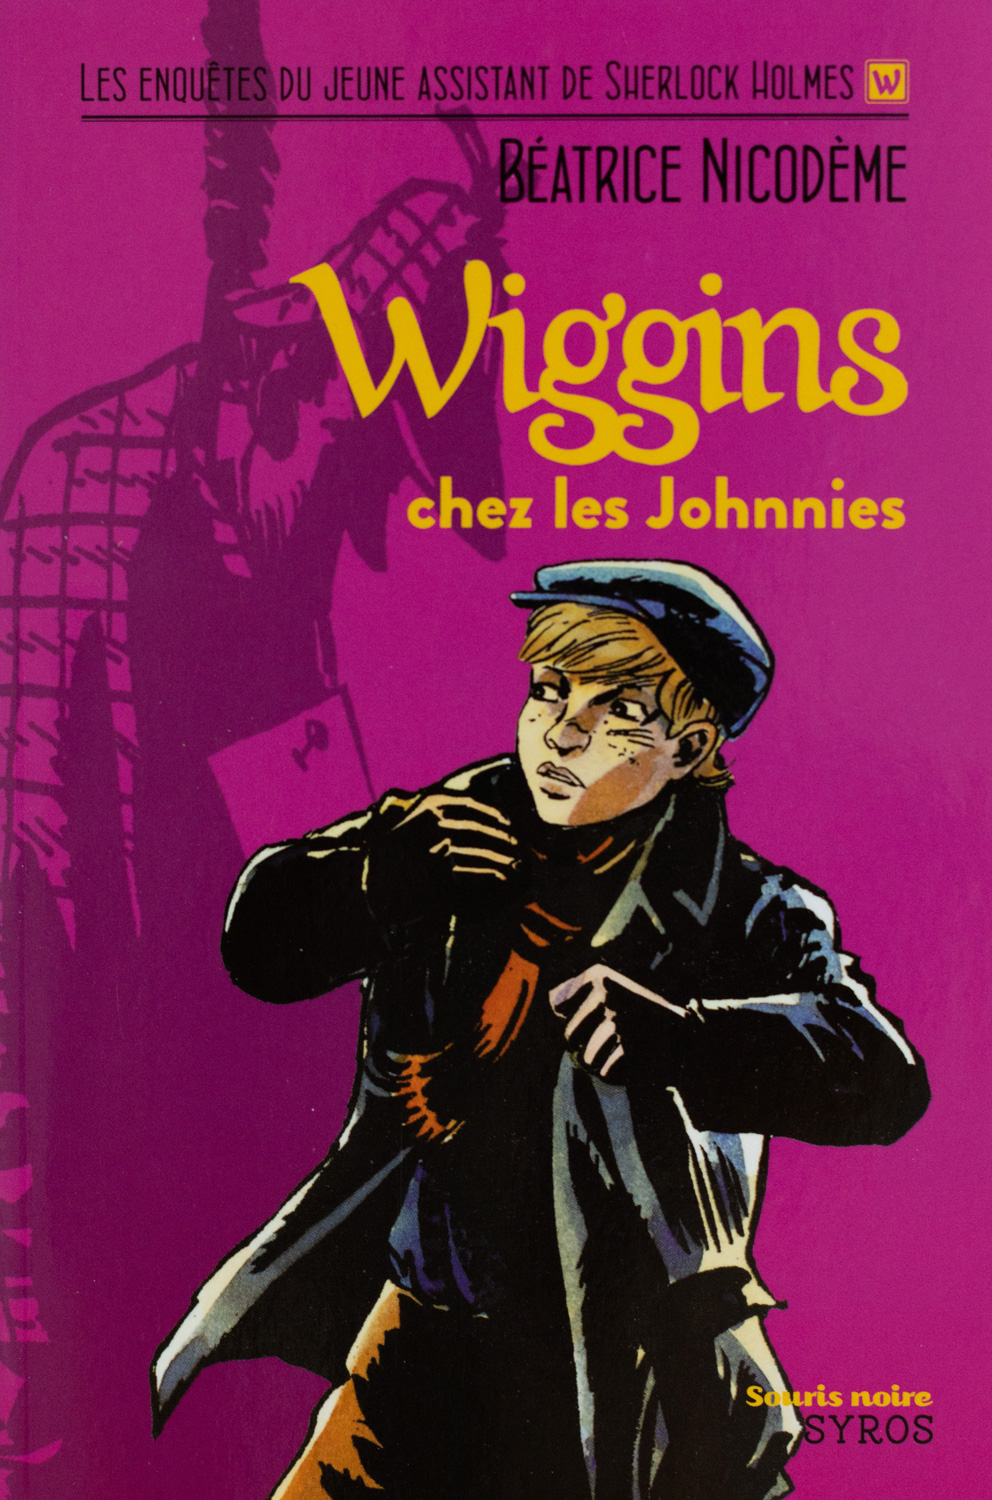 Beatrice Nicodeme autrice couverture du roman Wiggins chez les Johnnies